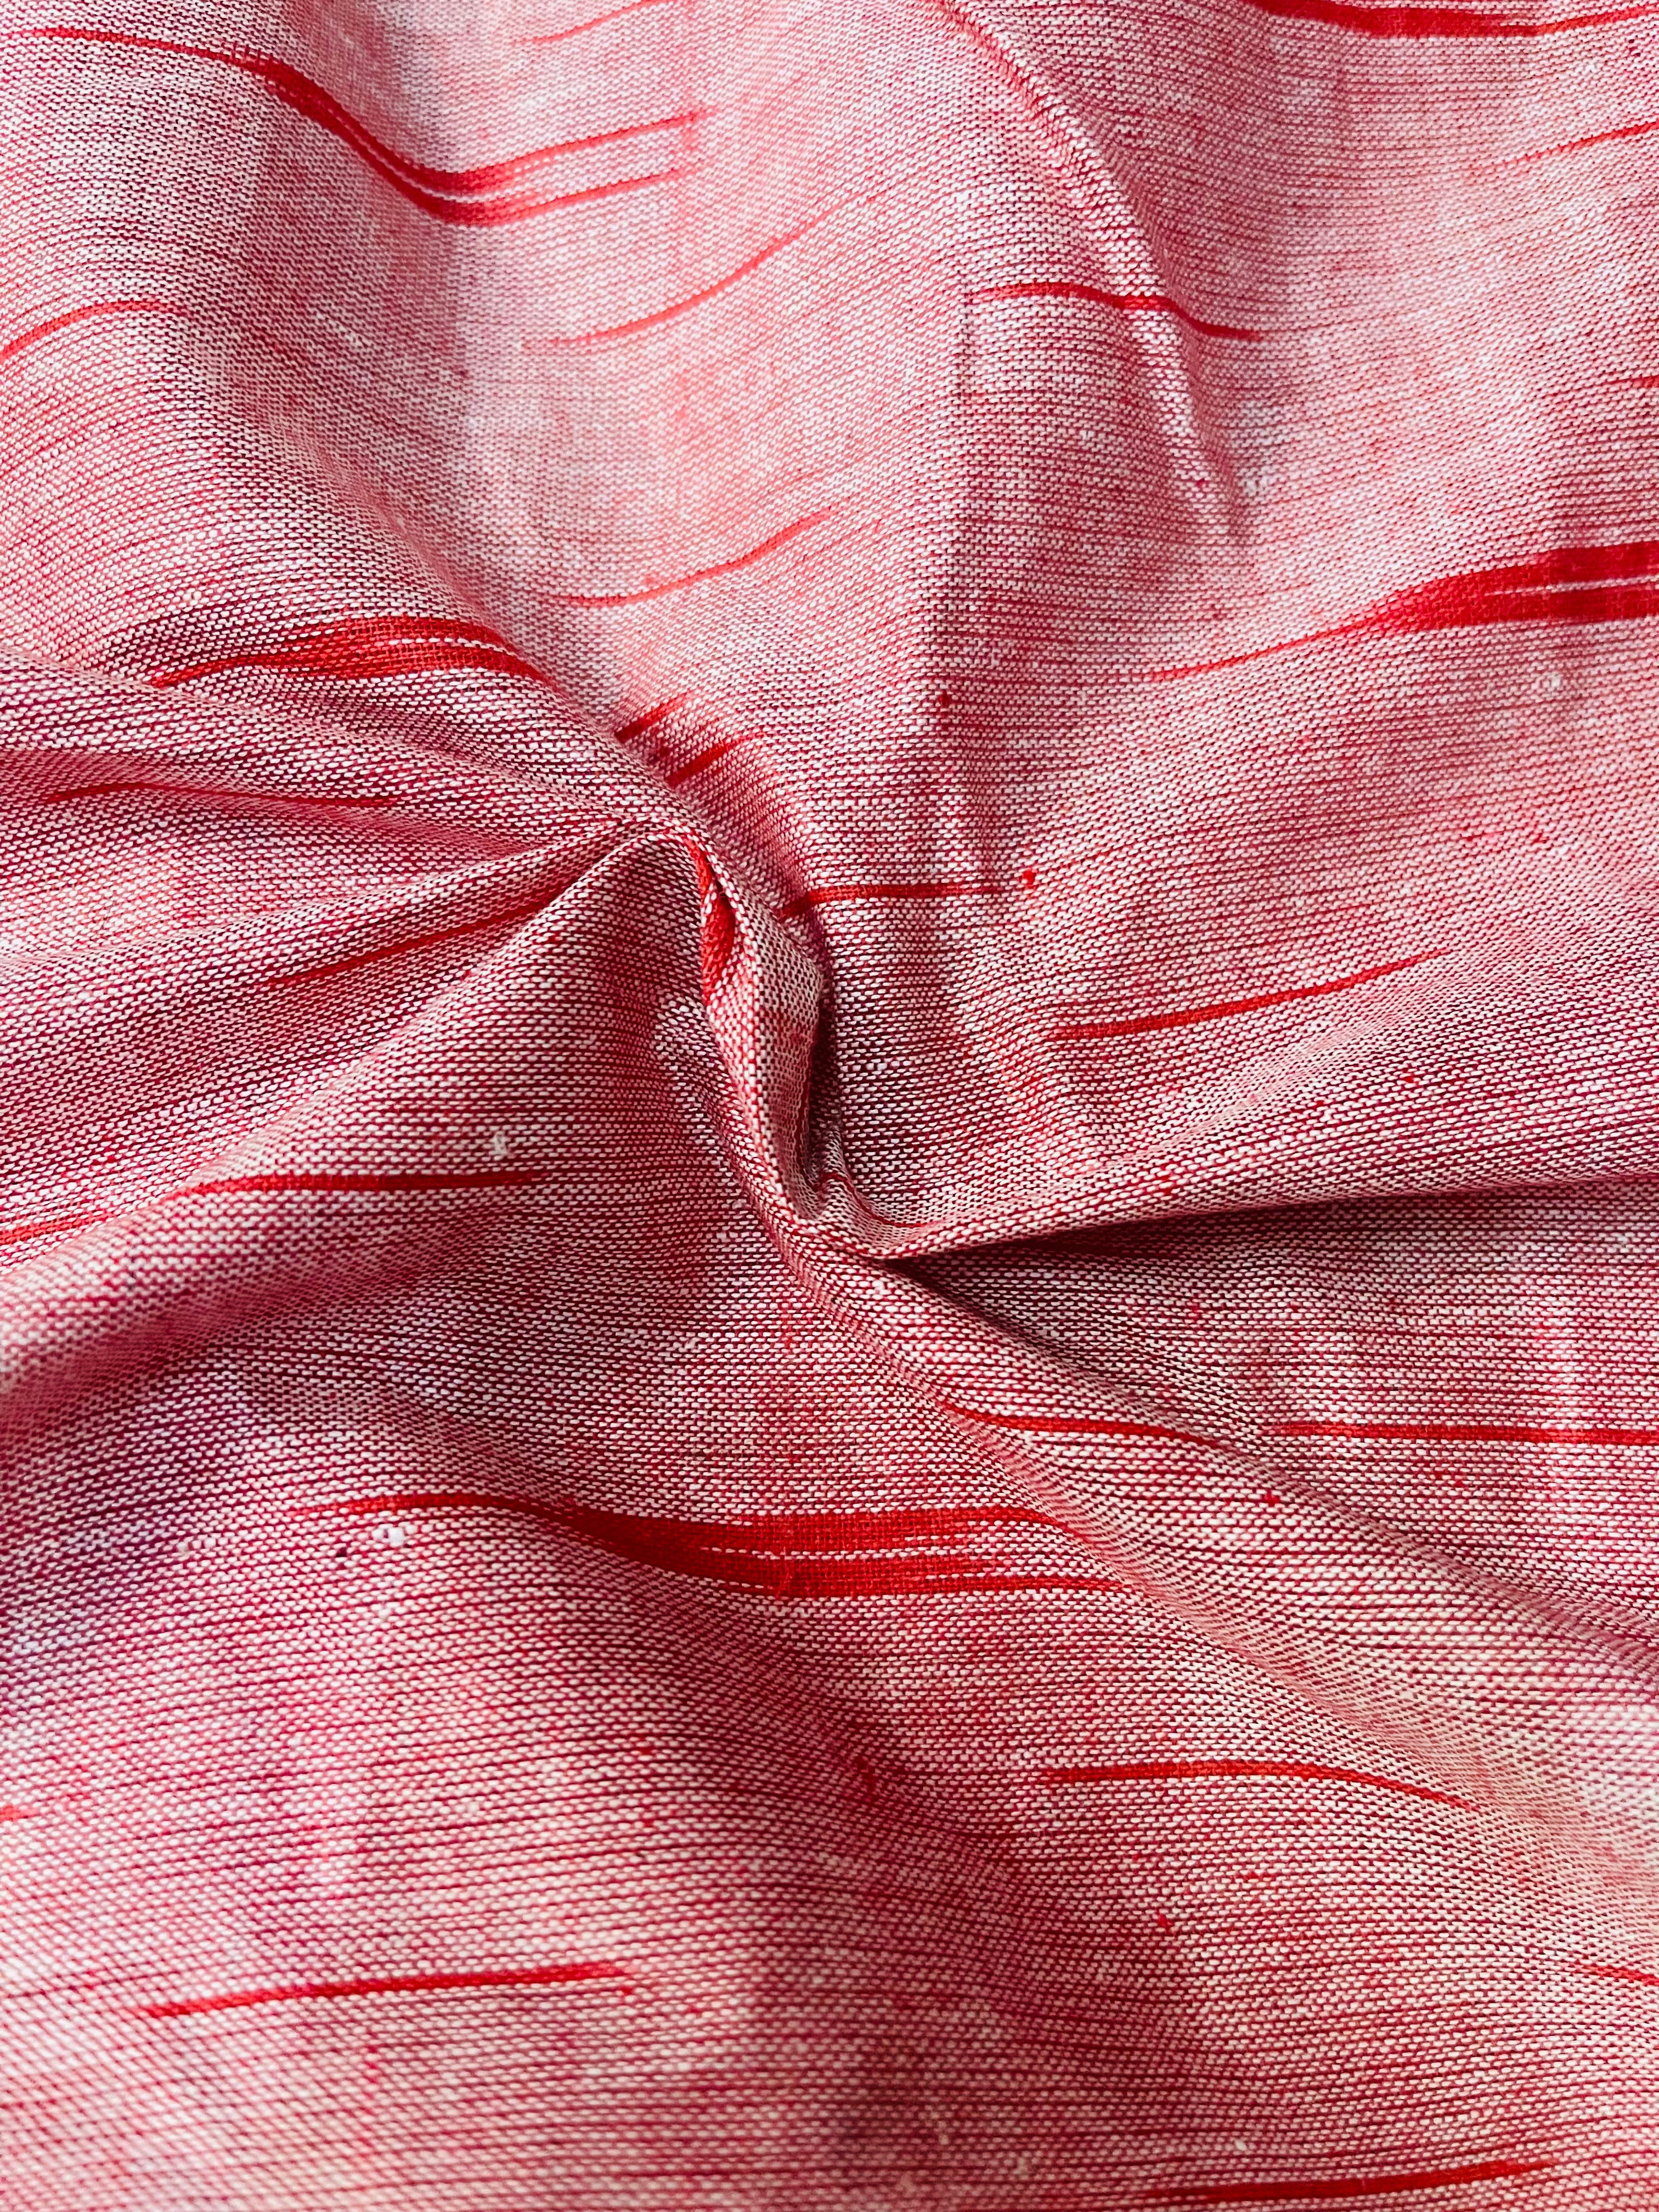 Peachish Red Ikkat blouse fabric